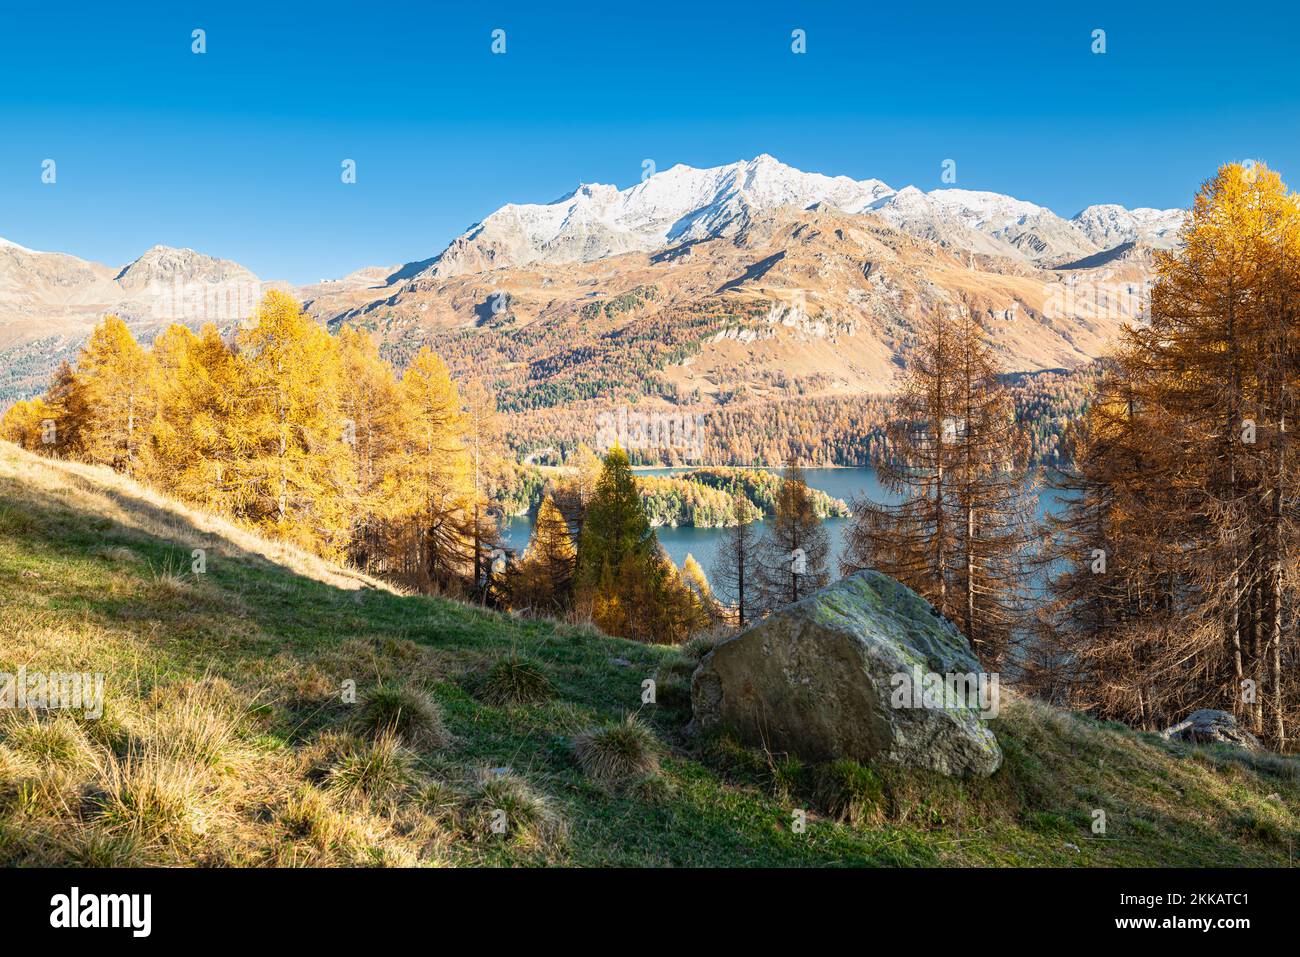 Majestätische Aussicht auf die schneebedeckten Berge und den See Sils in der Schweiz zwischen den goldenen Lärchen an einem sonnigen Herbsttag Stockfoto